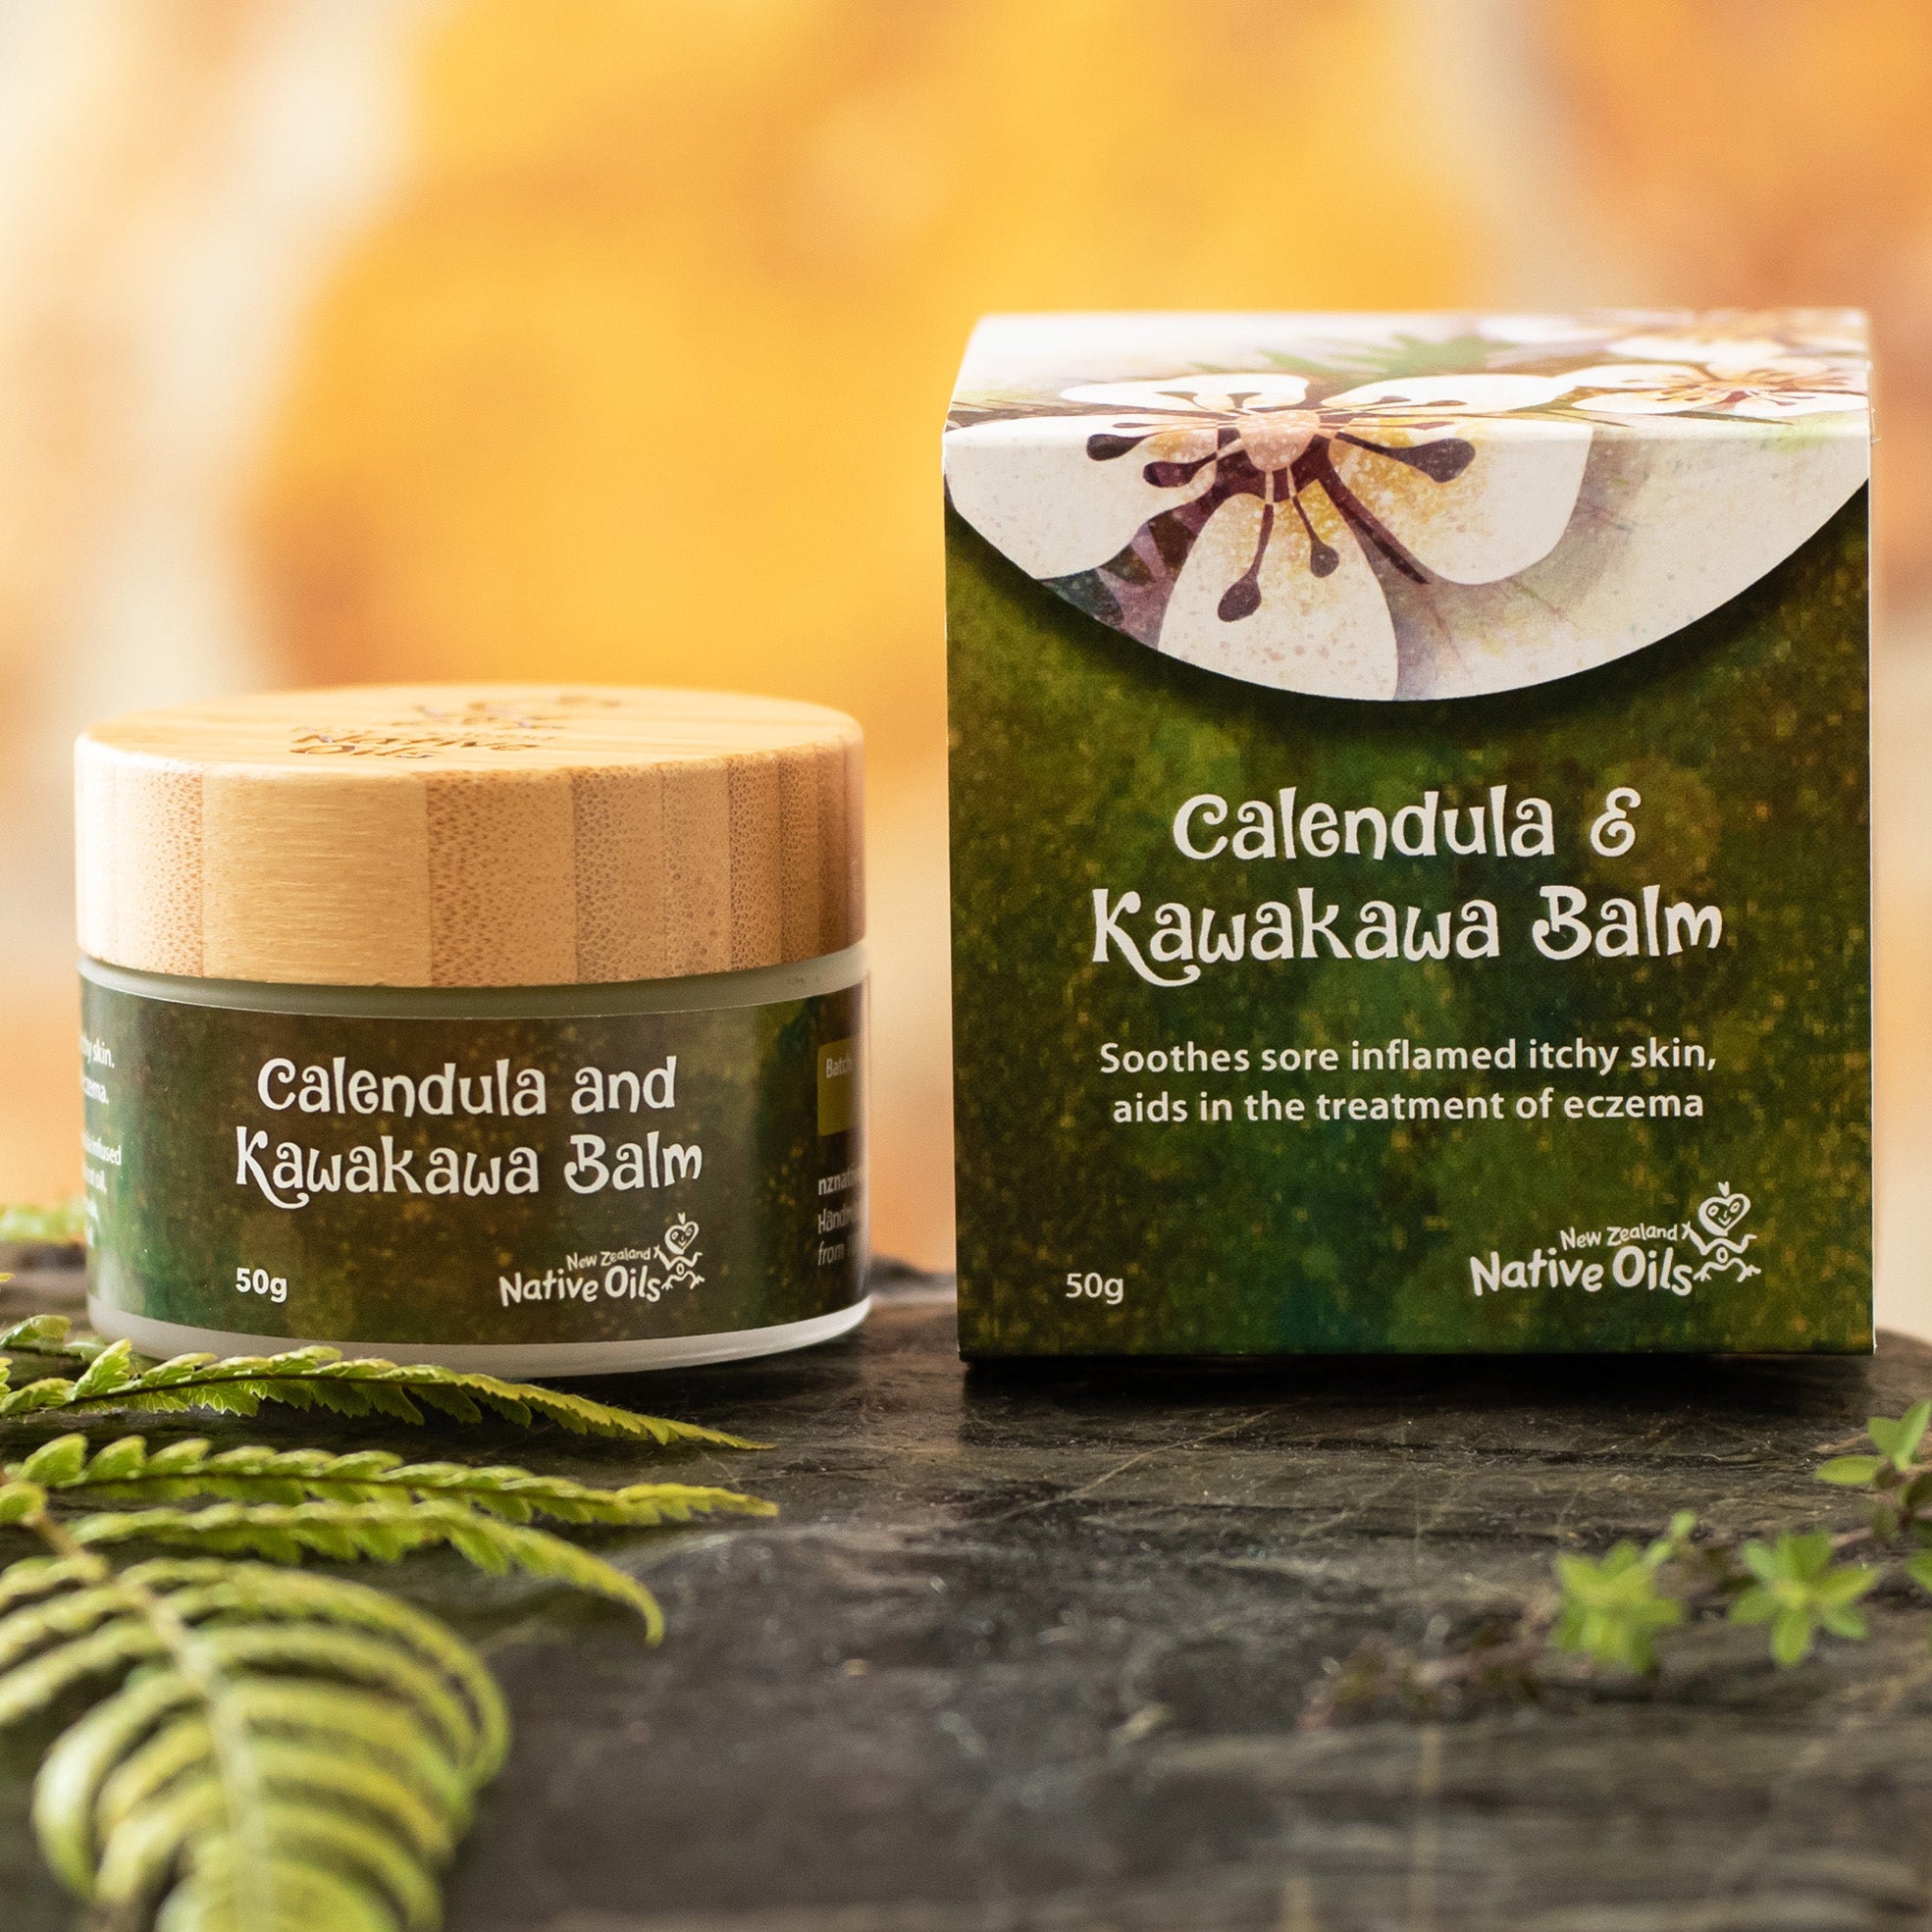 Calendula and Kawakawa Balm-NZ Native Oils Ltd